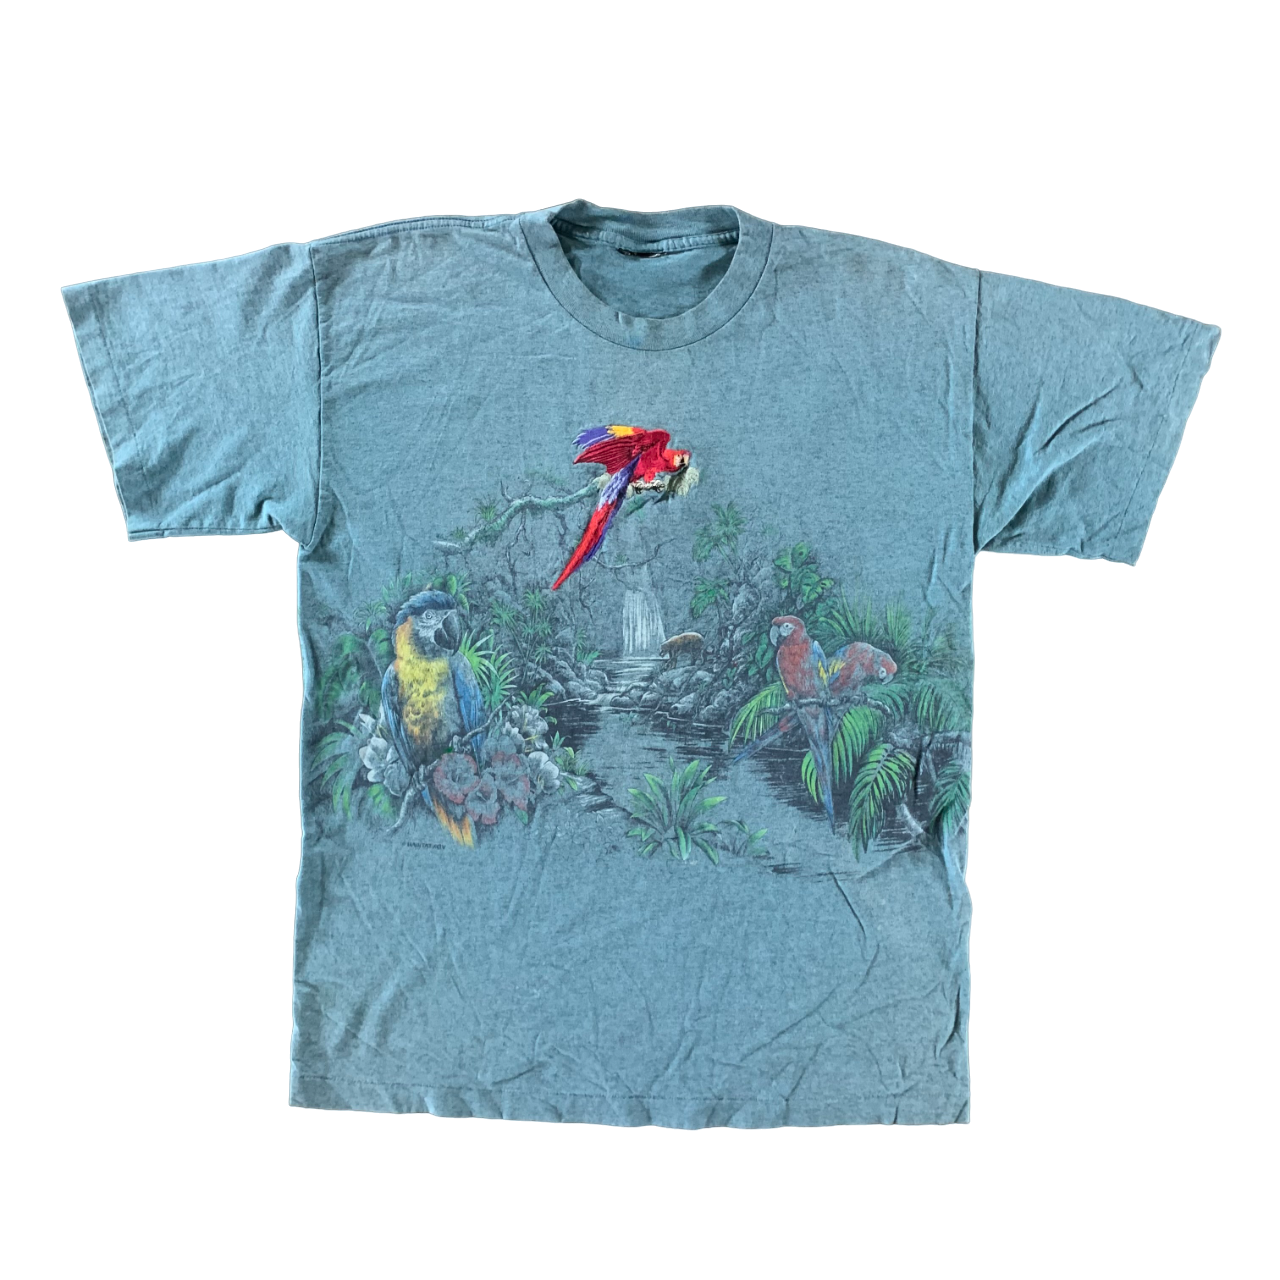 Vintage 1990s Parrott T-shirt size XL